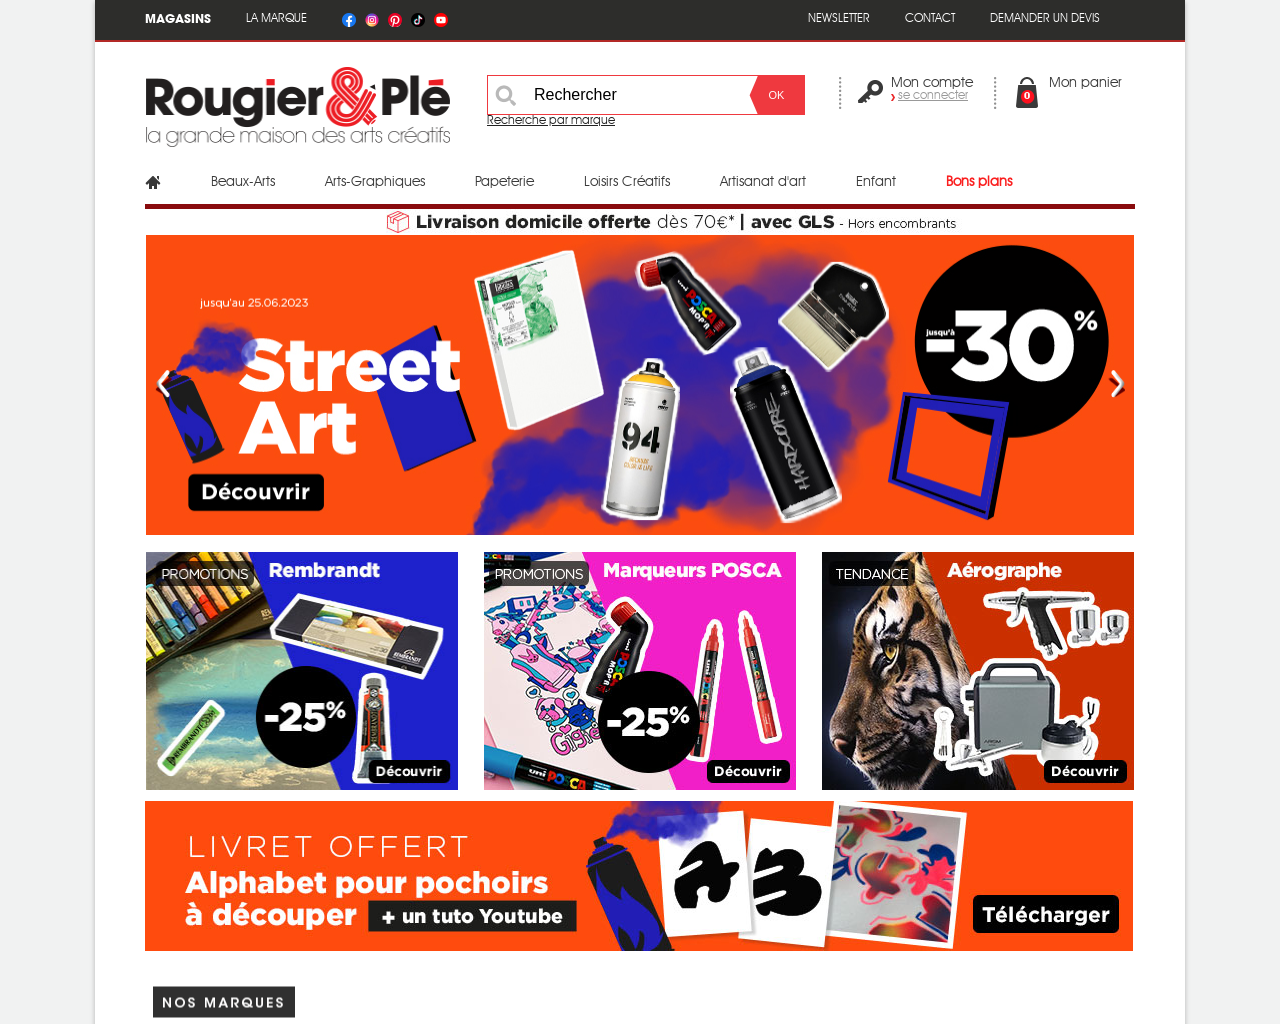 www.rougier-ple.fr